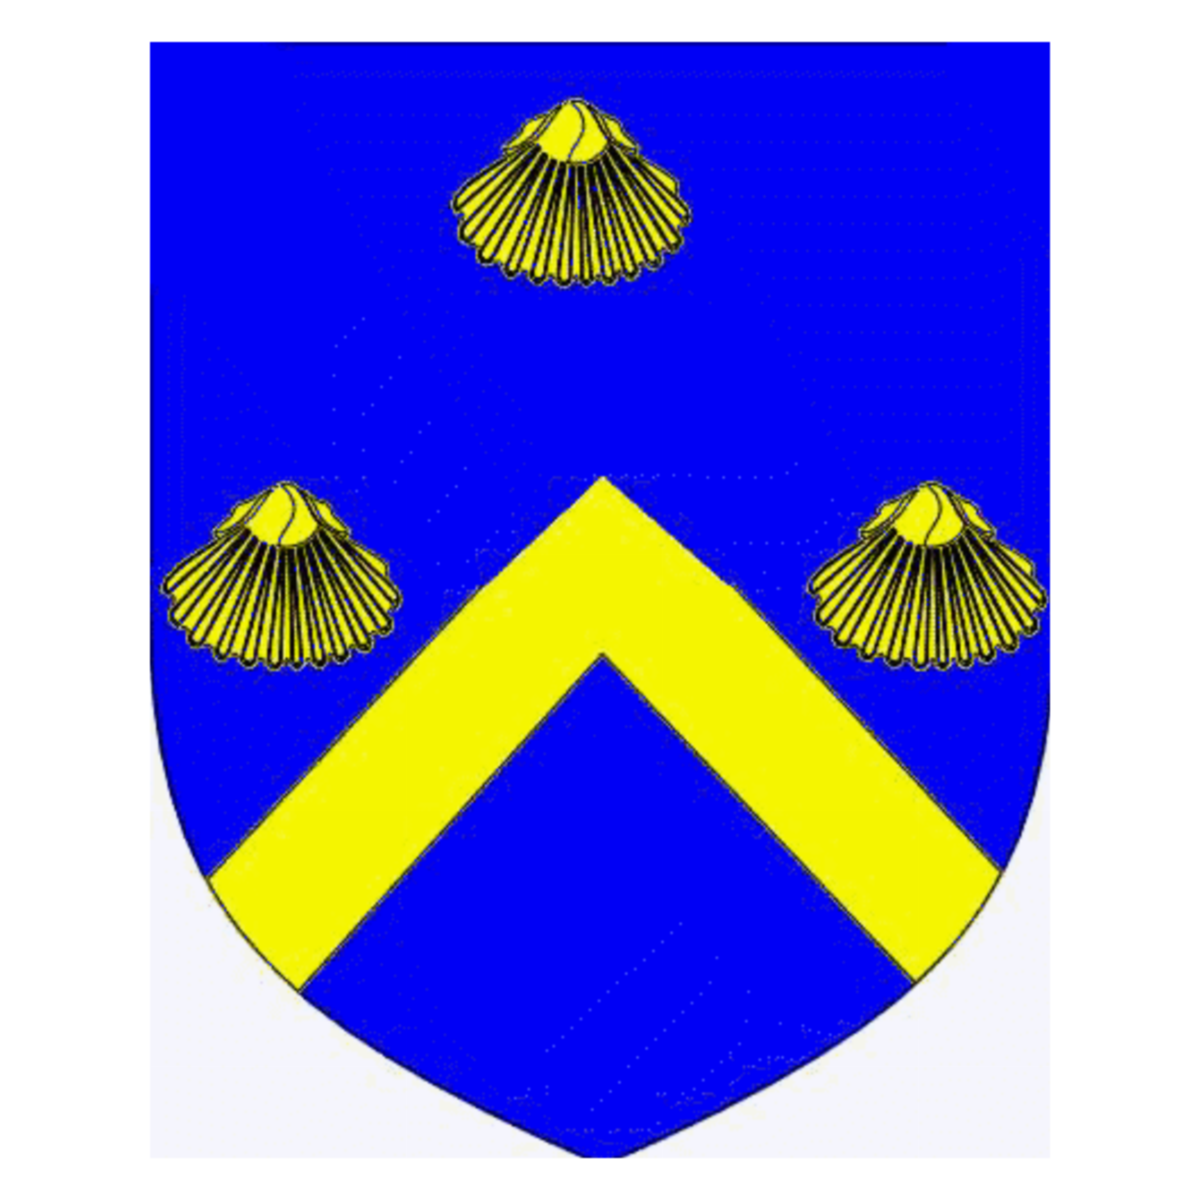 Wappen der Familie Carboni